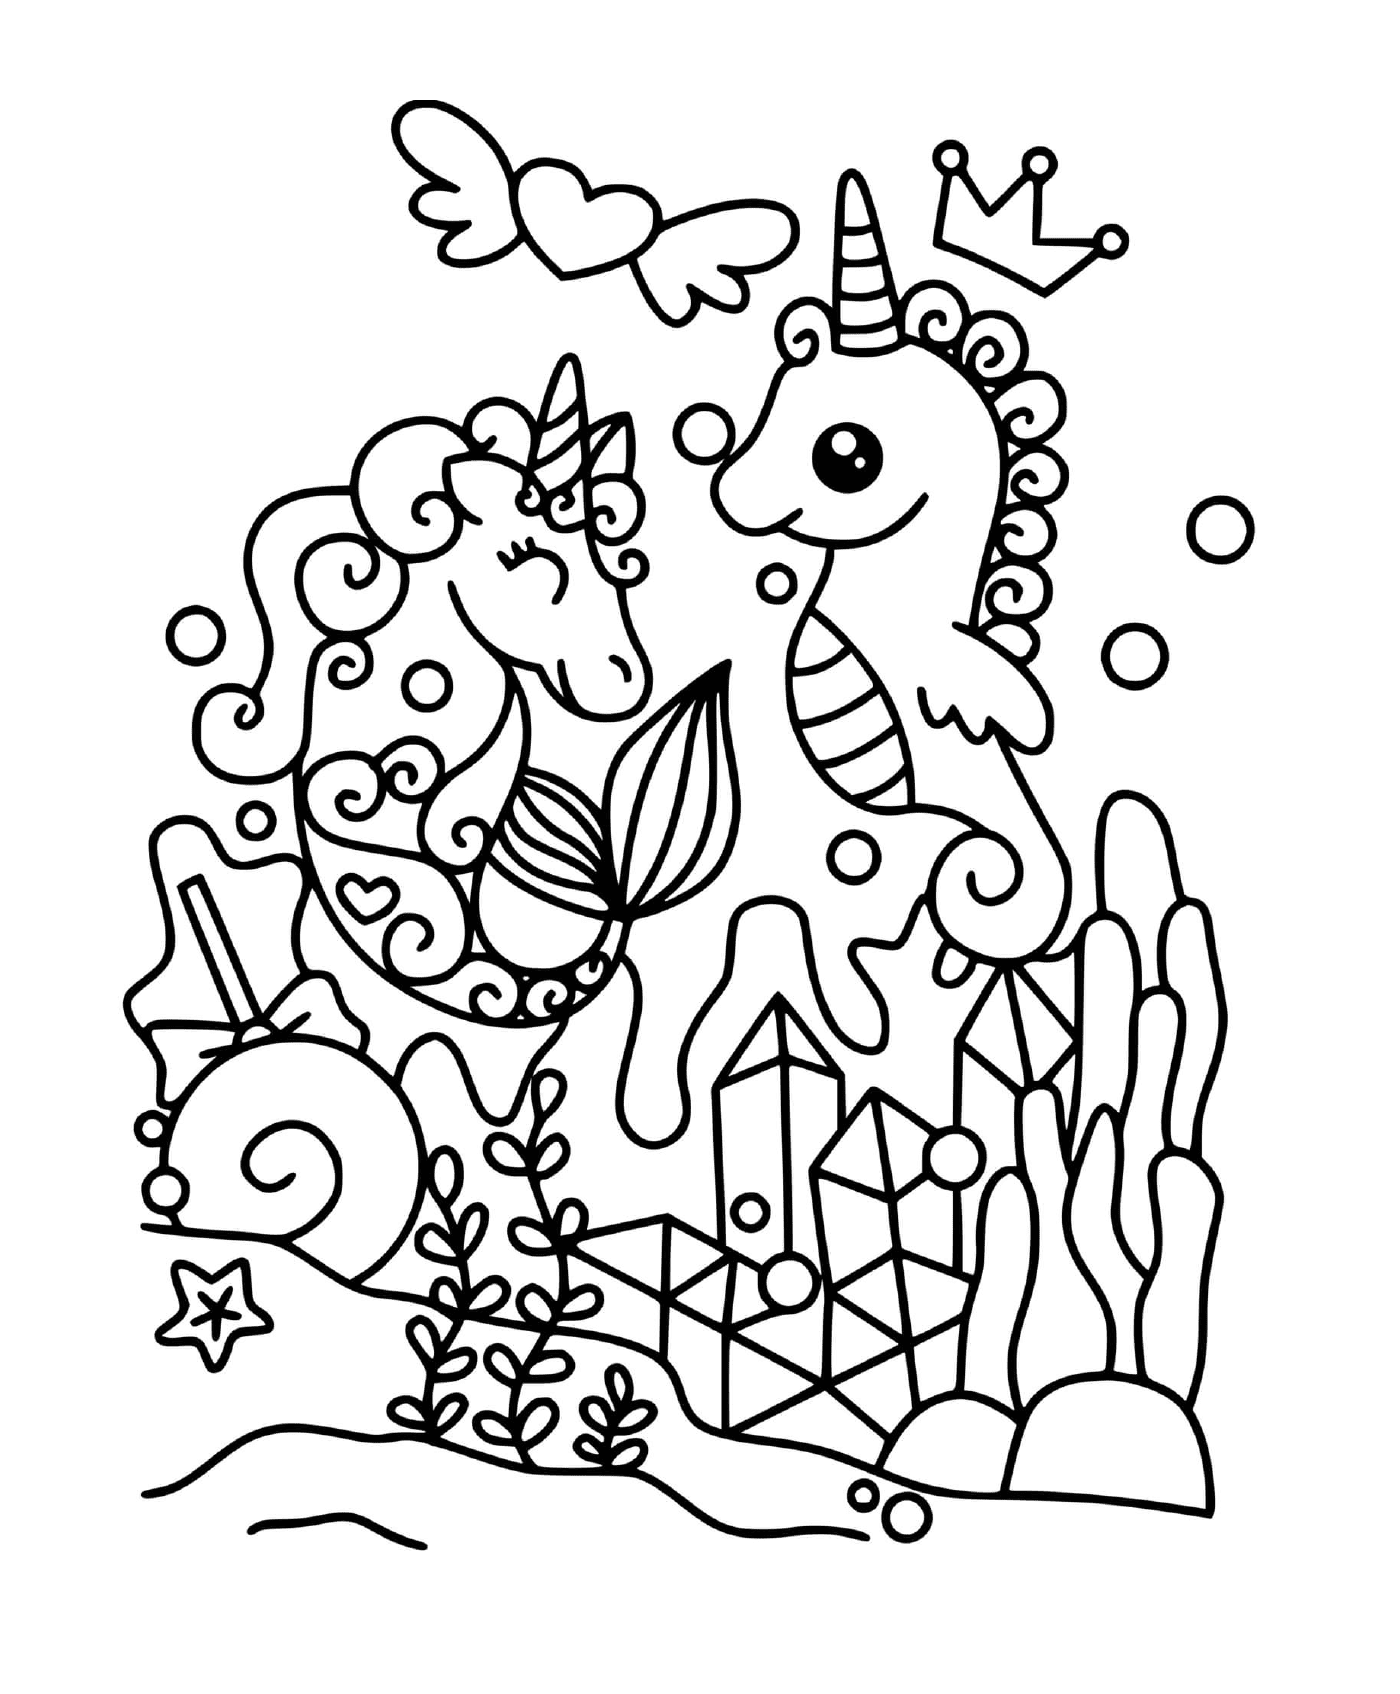  Unicorno sotto l'acqua magica 